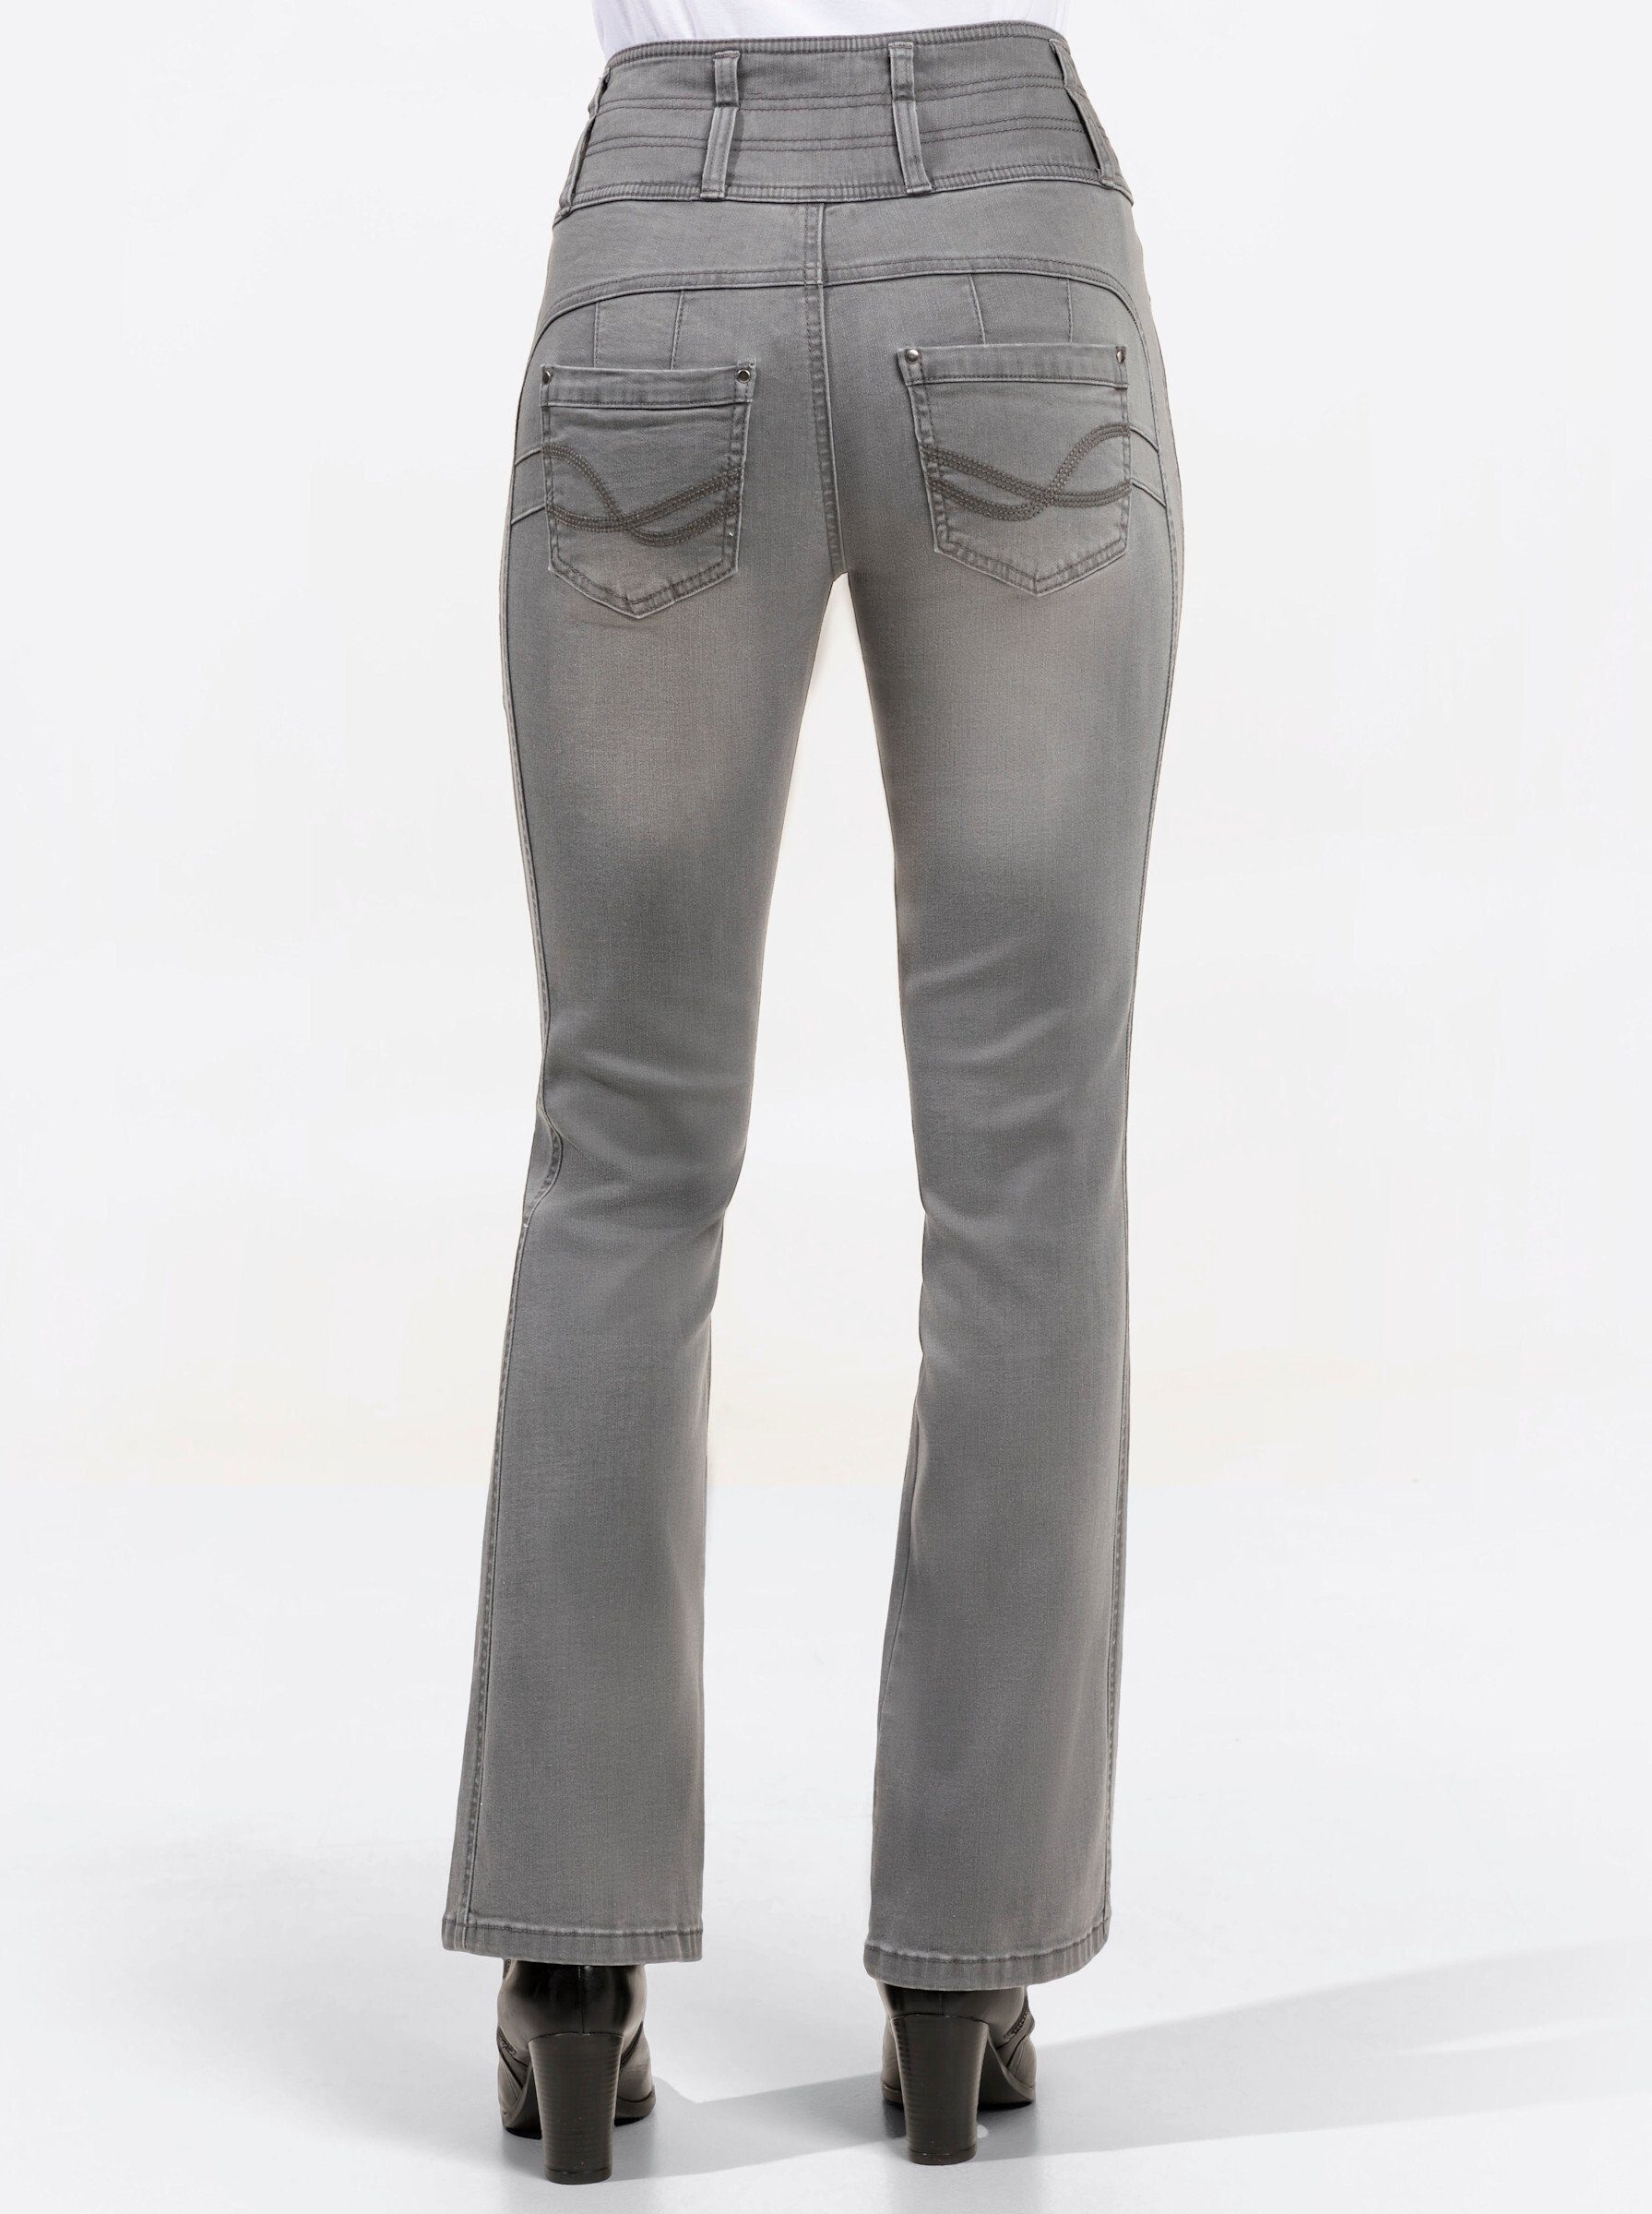 WEIDEN grey-denim light Jeans WITT Bequeme